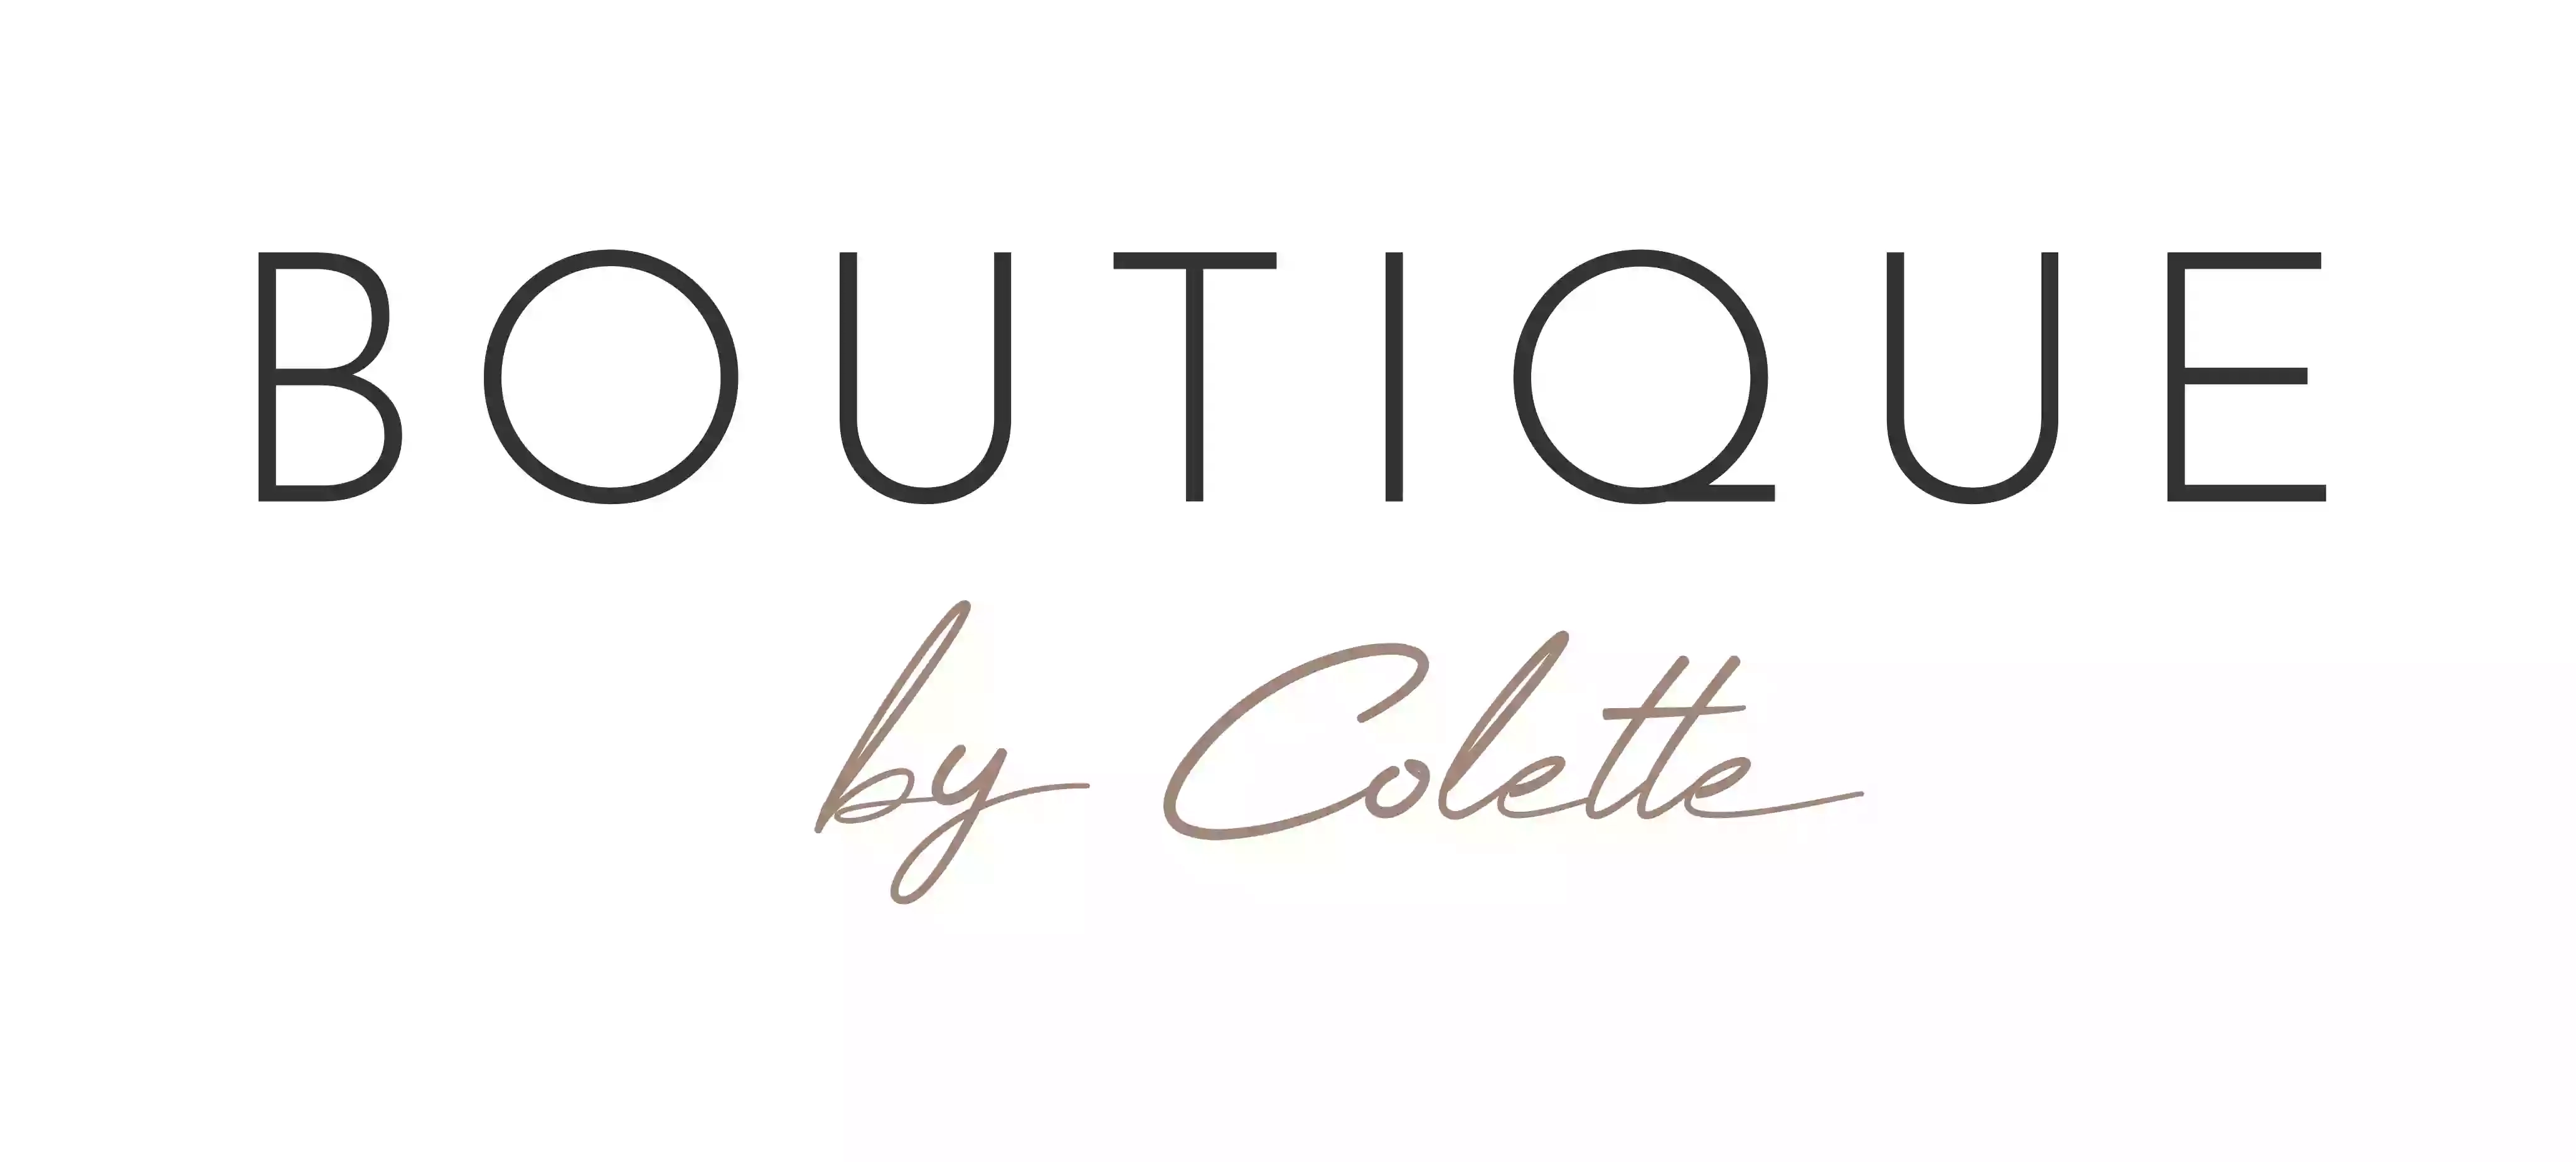 Boutique By Colette